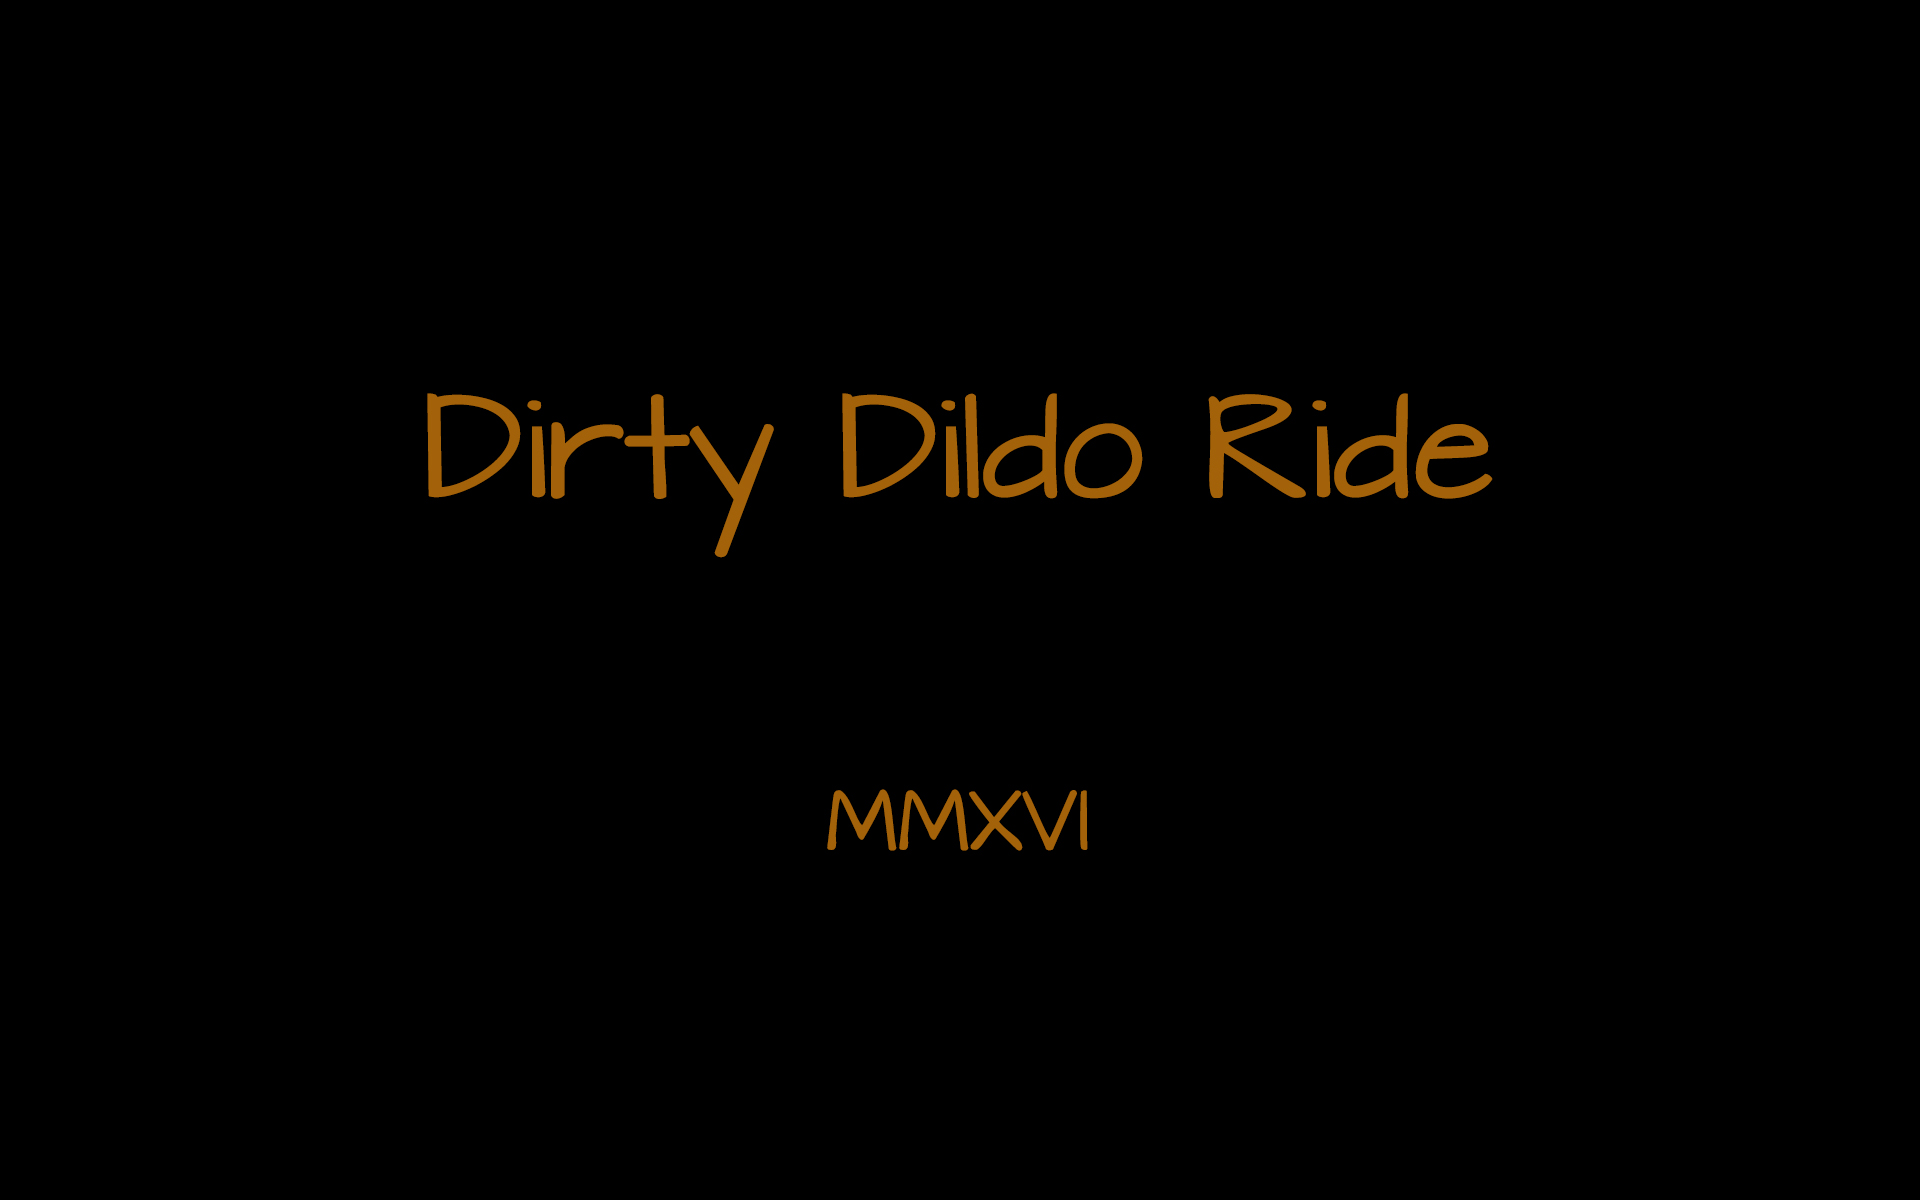 Dirty Dildo Ride #1